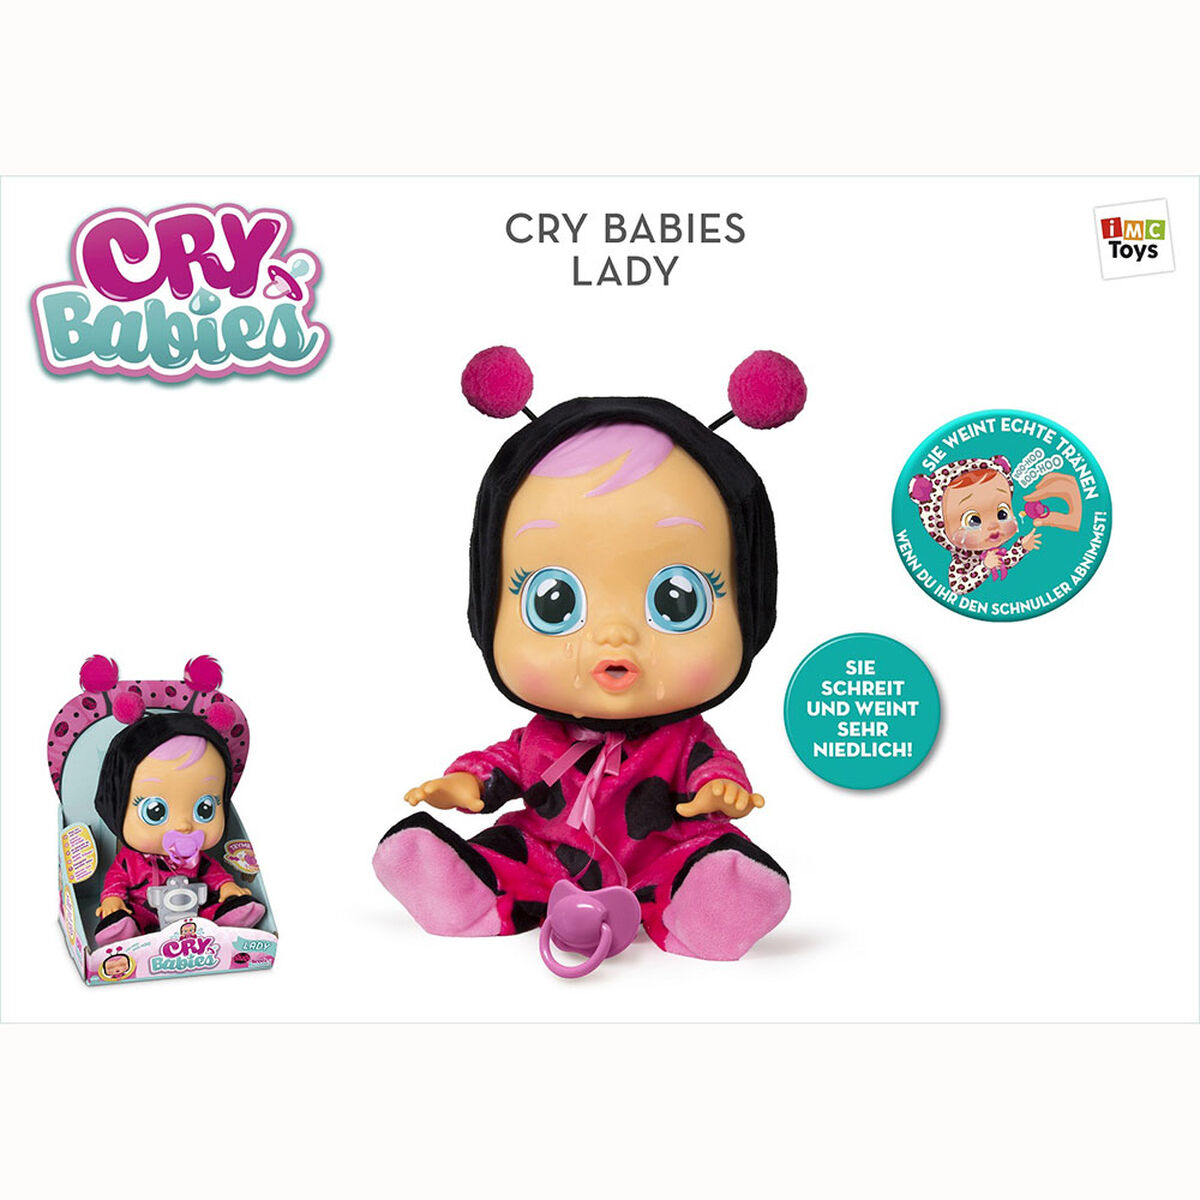 CRY BABIES LADY (ladybug) CRY BABIES